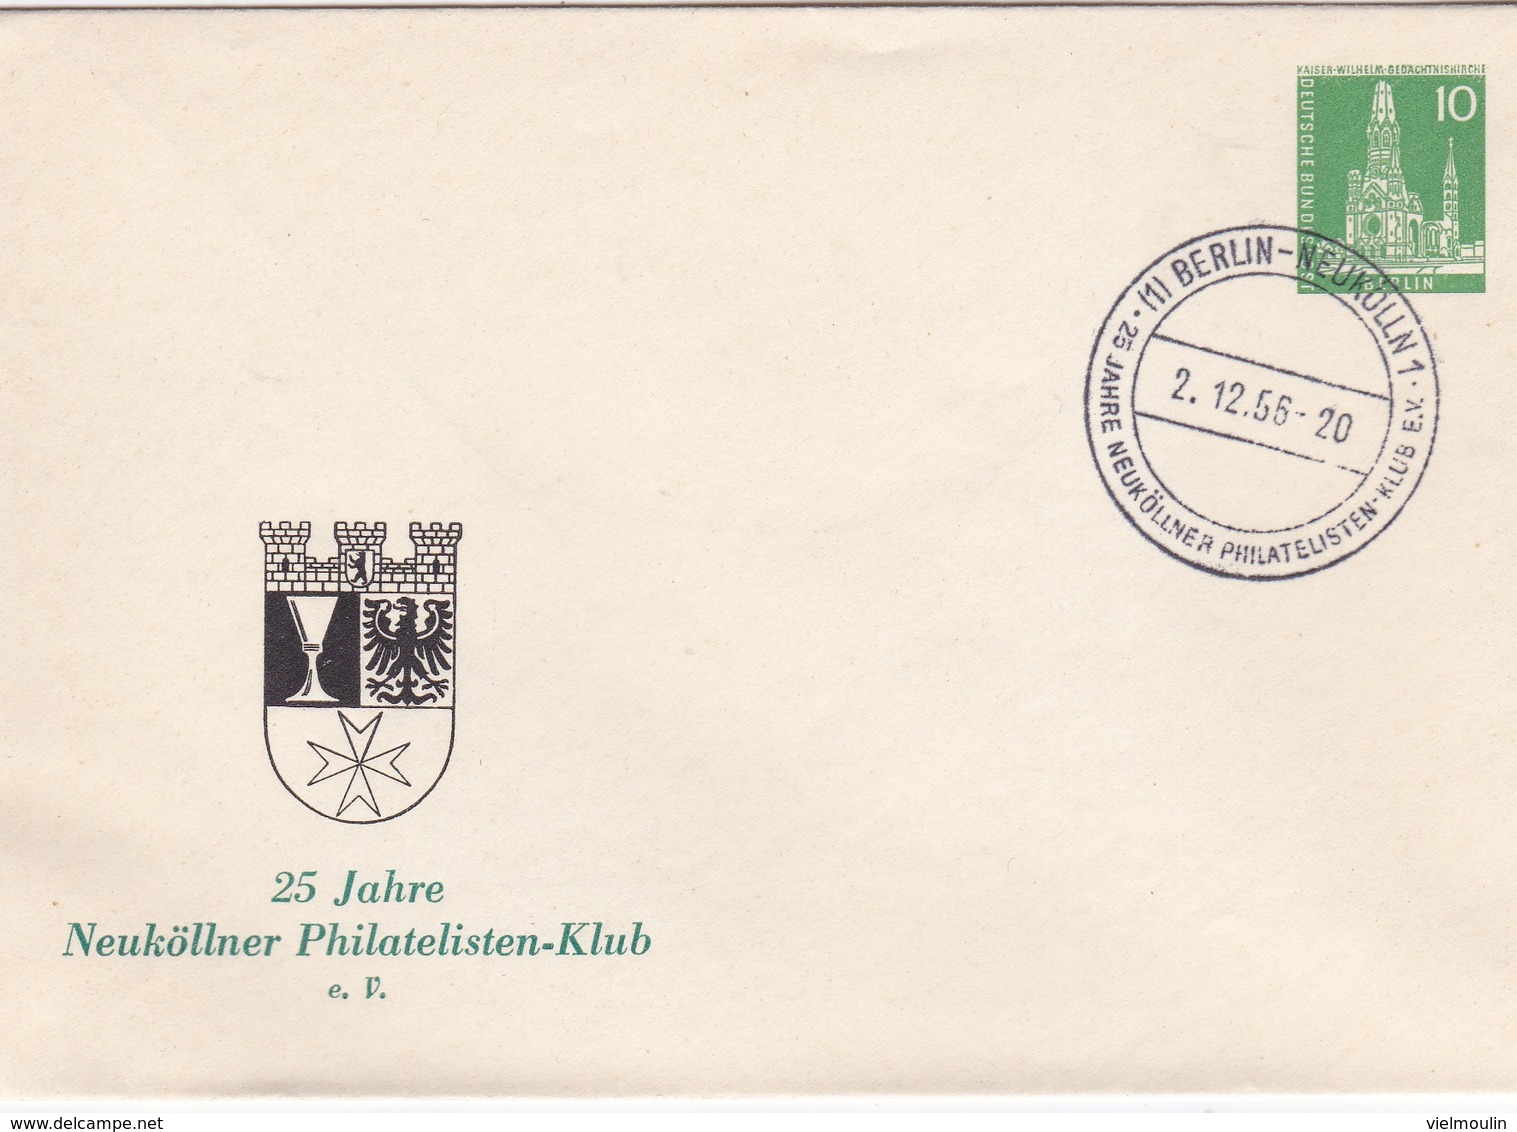 ALLEMAGNE ENTIER POSTAL PRIVE 25 JAHRE NEUKOLLNER PHILATELISTEN KLUB 1956 DEUTSCHE POST BERLIN 10 RARE !!! - Cartes Postales - Oblitérées